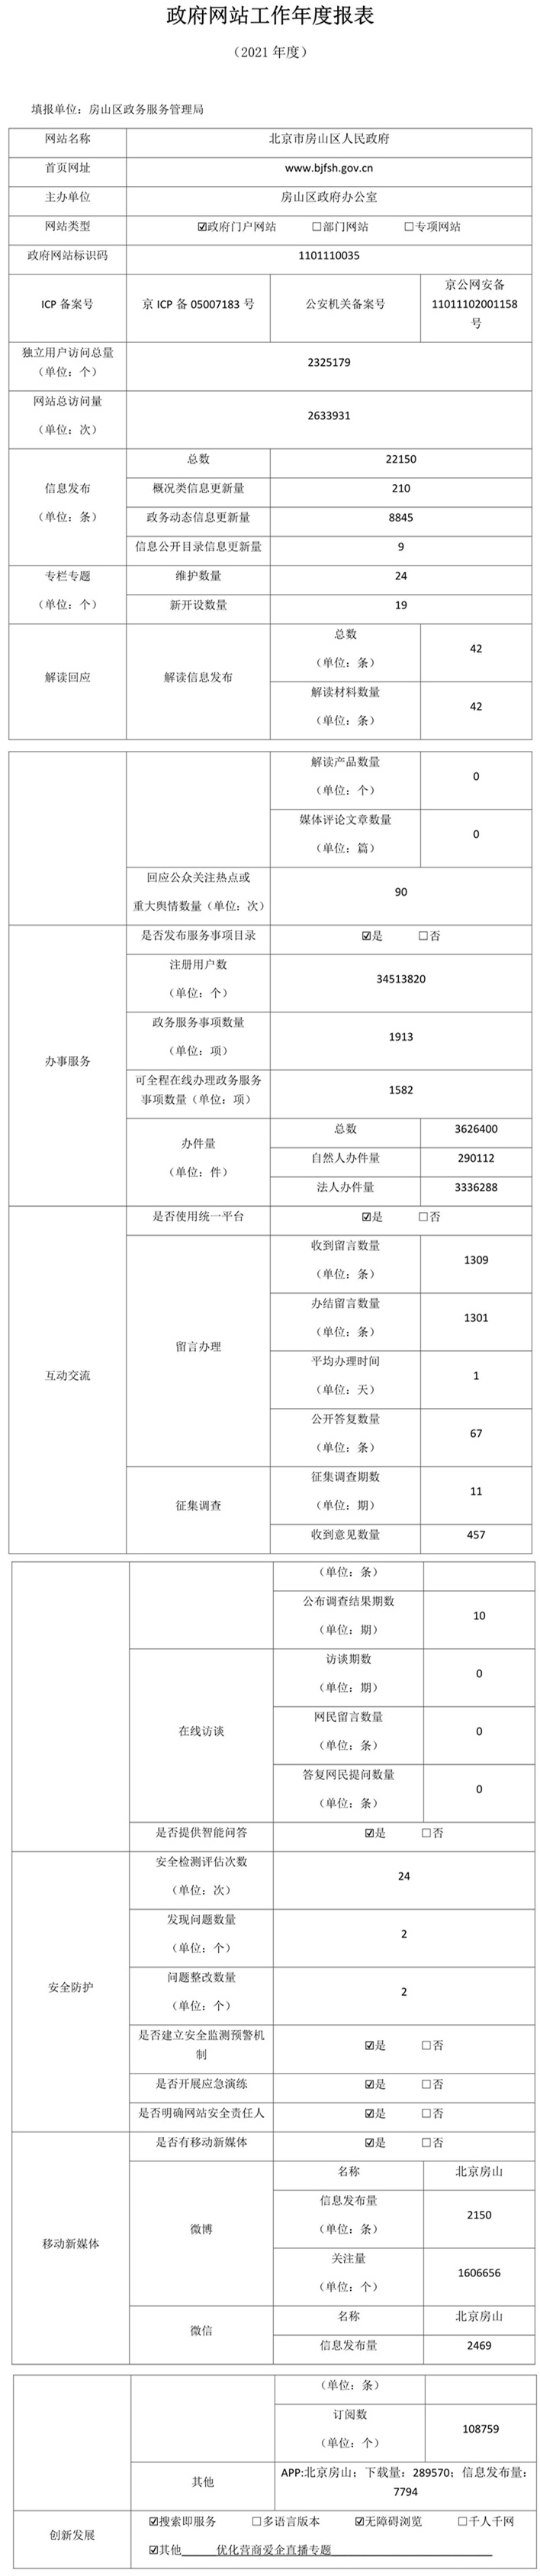 北京市房山区人民政府2021年政府网站年度工作报表